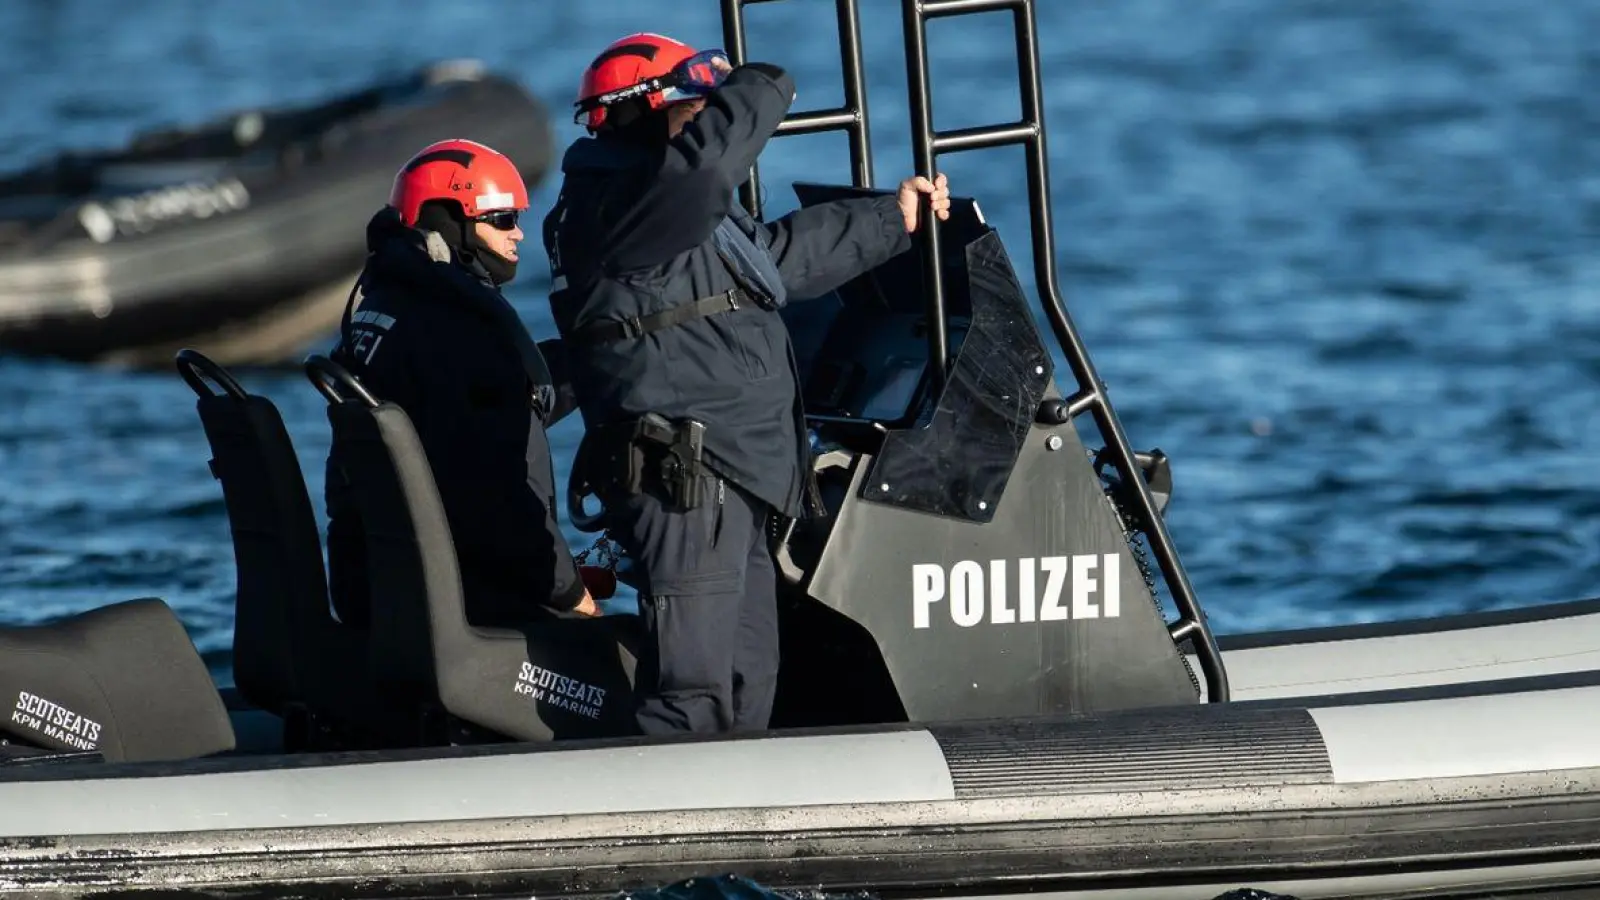 Einsatzkräfte der Polizei fahren auf einem Boot. (Foto: Silas Stein/dpa)